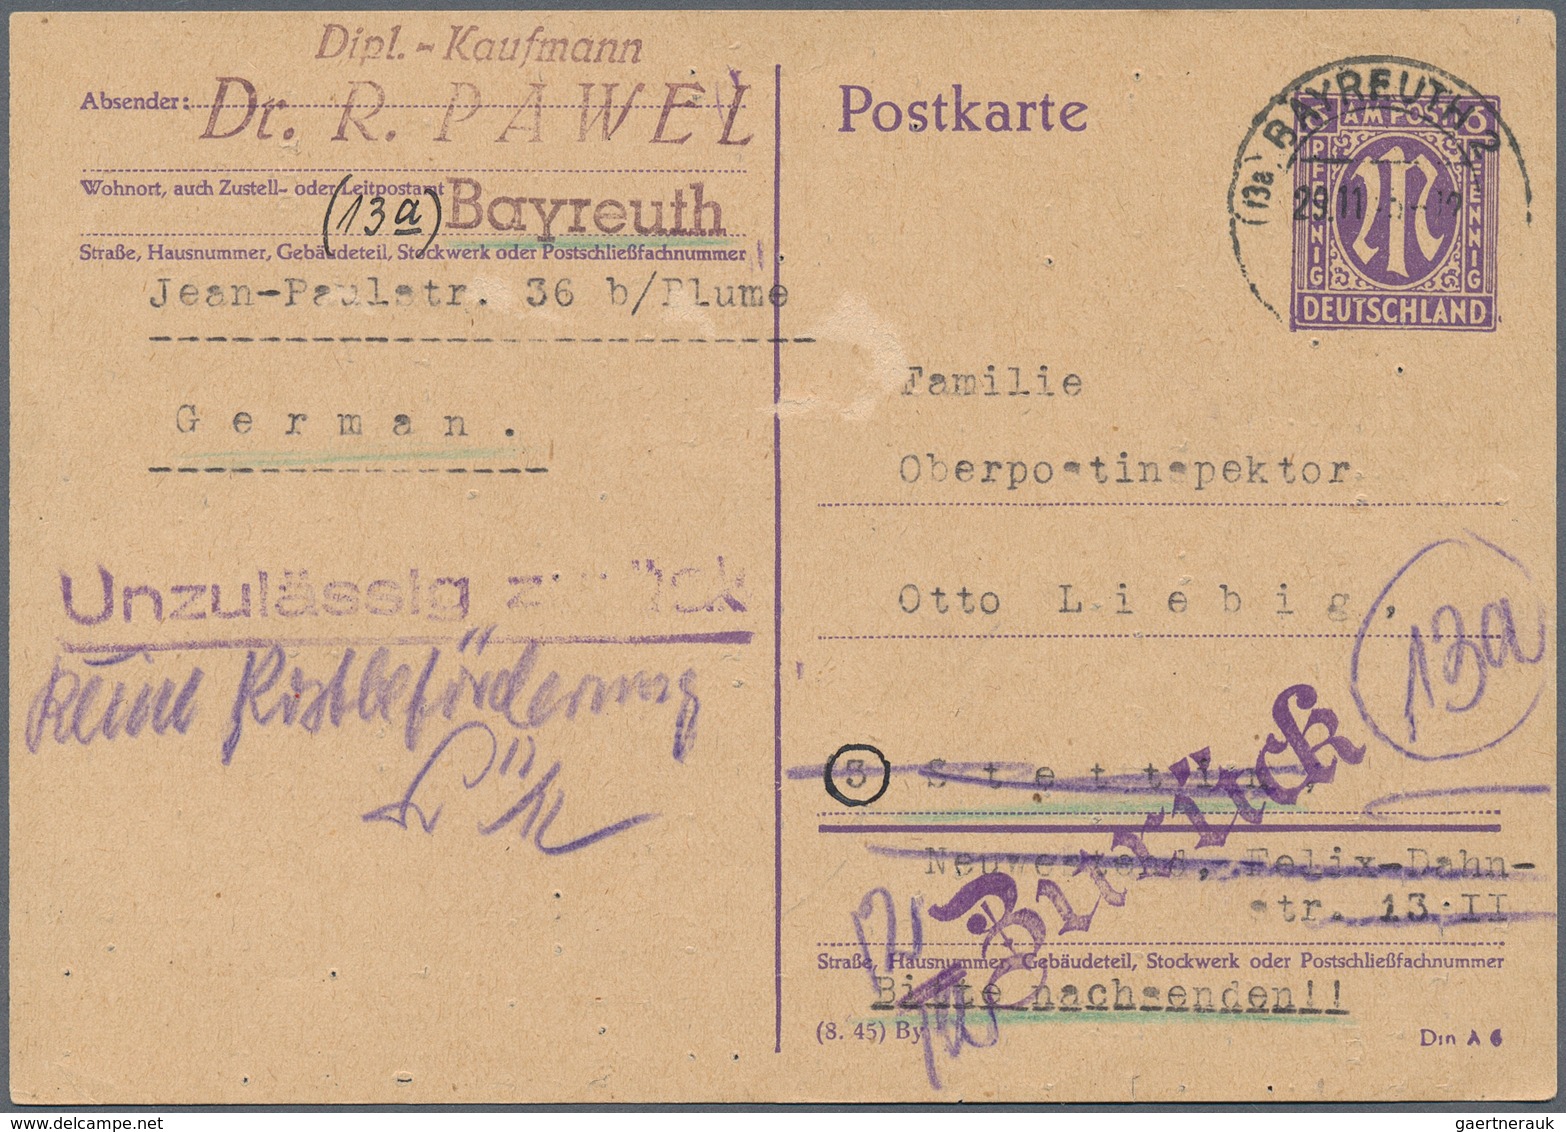 Alliierte Besetzung - Gebühr Bezahlt: 1945/46, Schöner Posten von 24 meist ehemaligen Einzellosen da